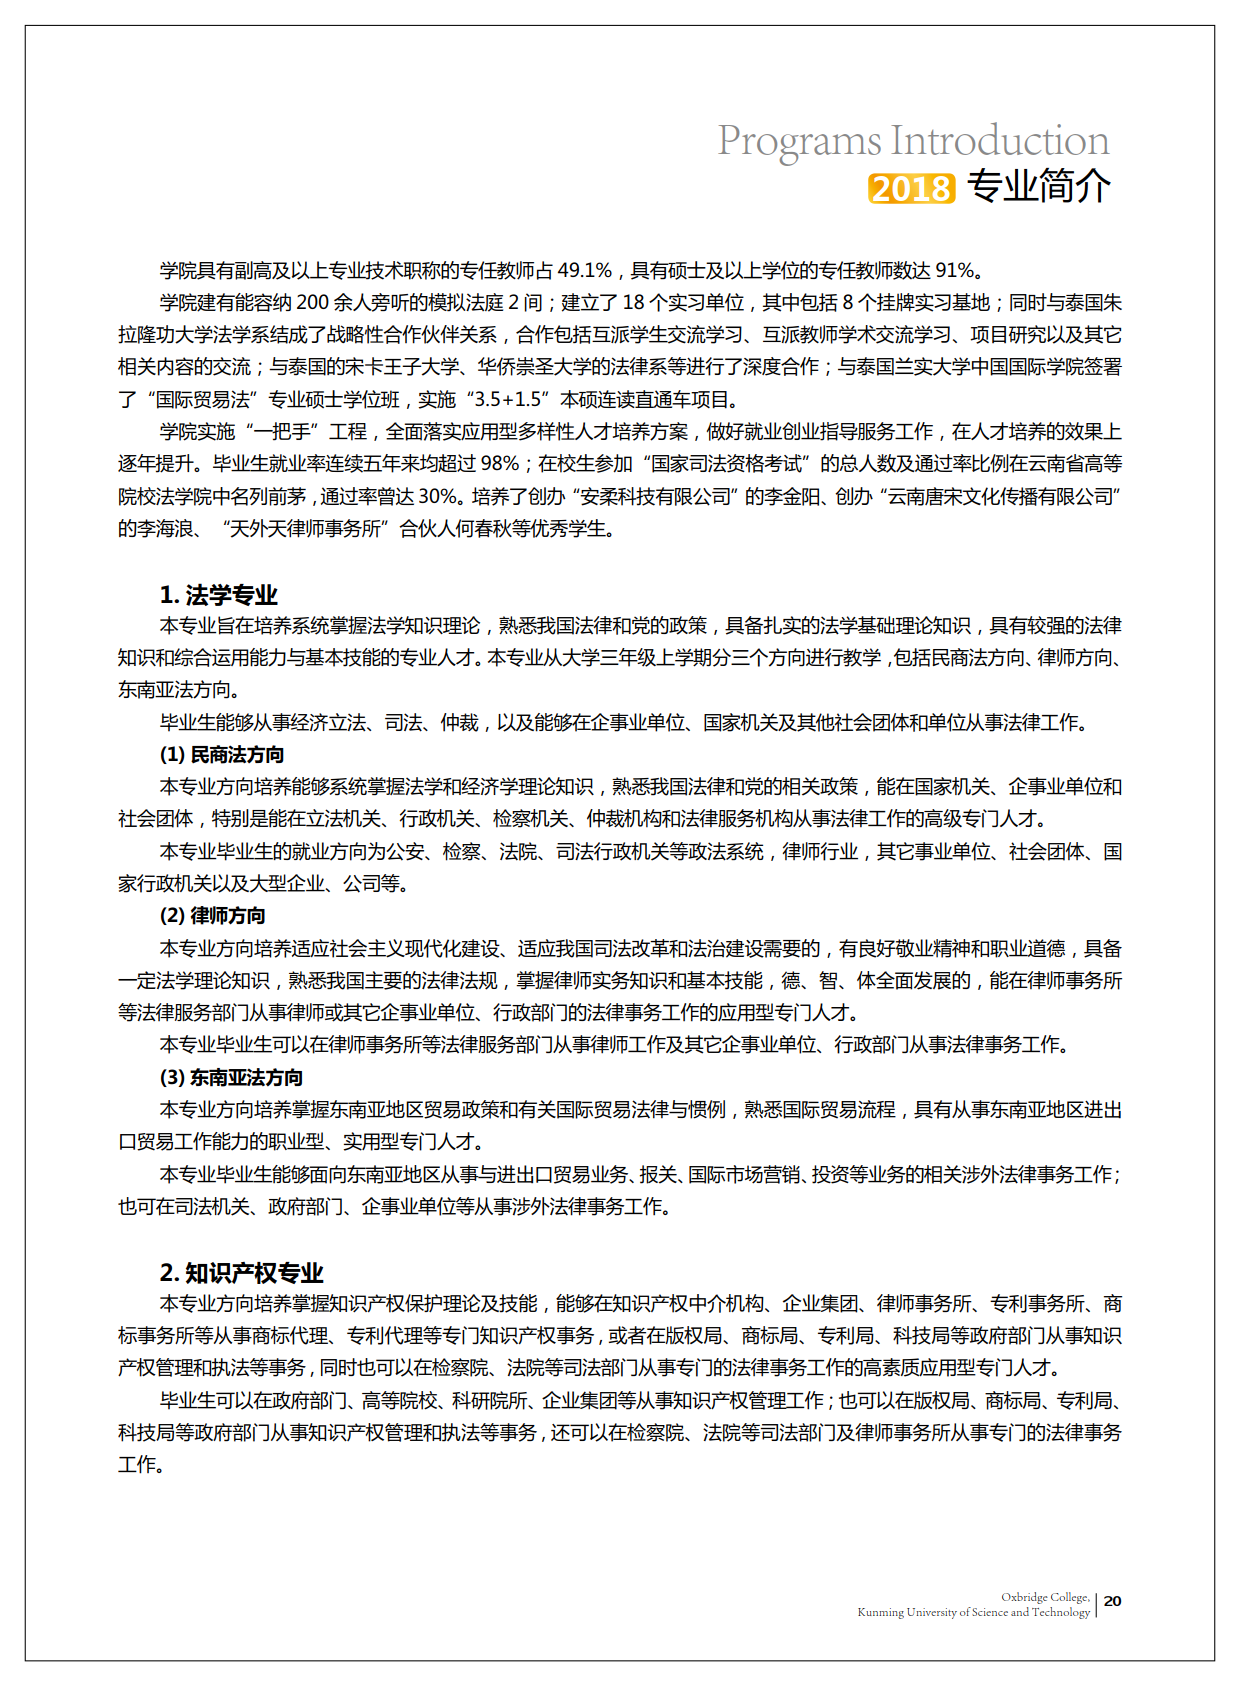 津桥学校招生手册-0611-加外框单页_23